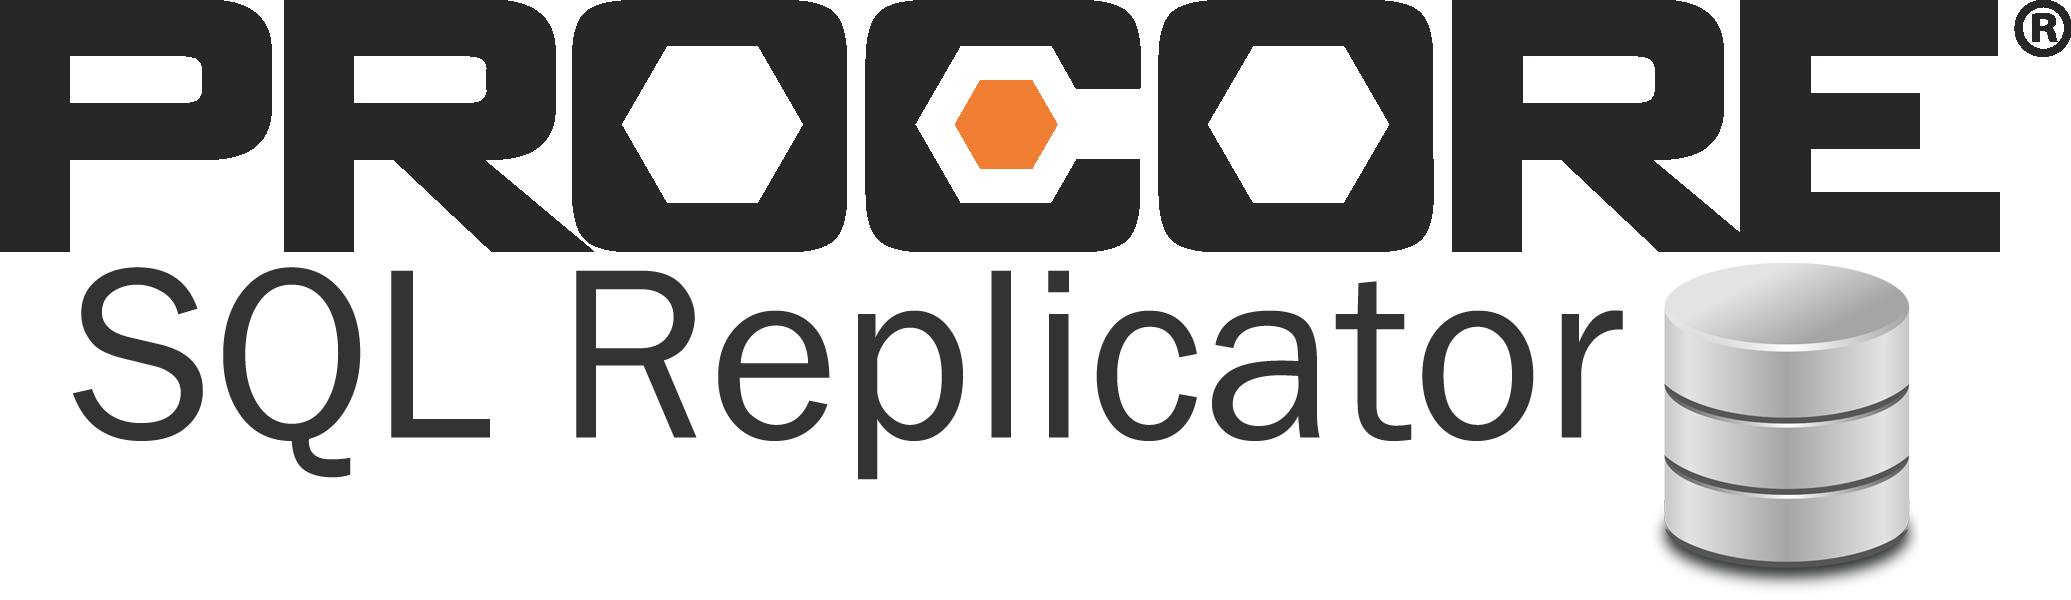 Procore SQL Replicator Logo